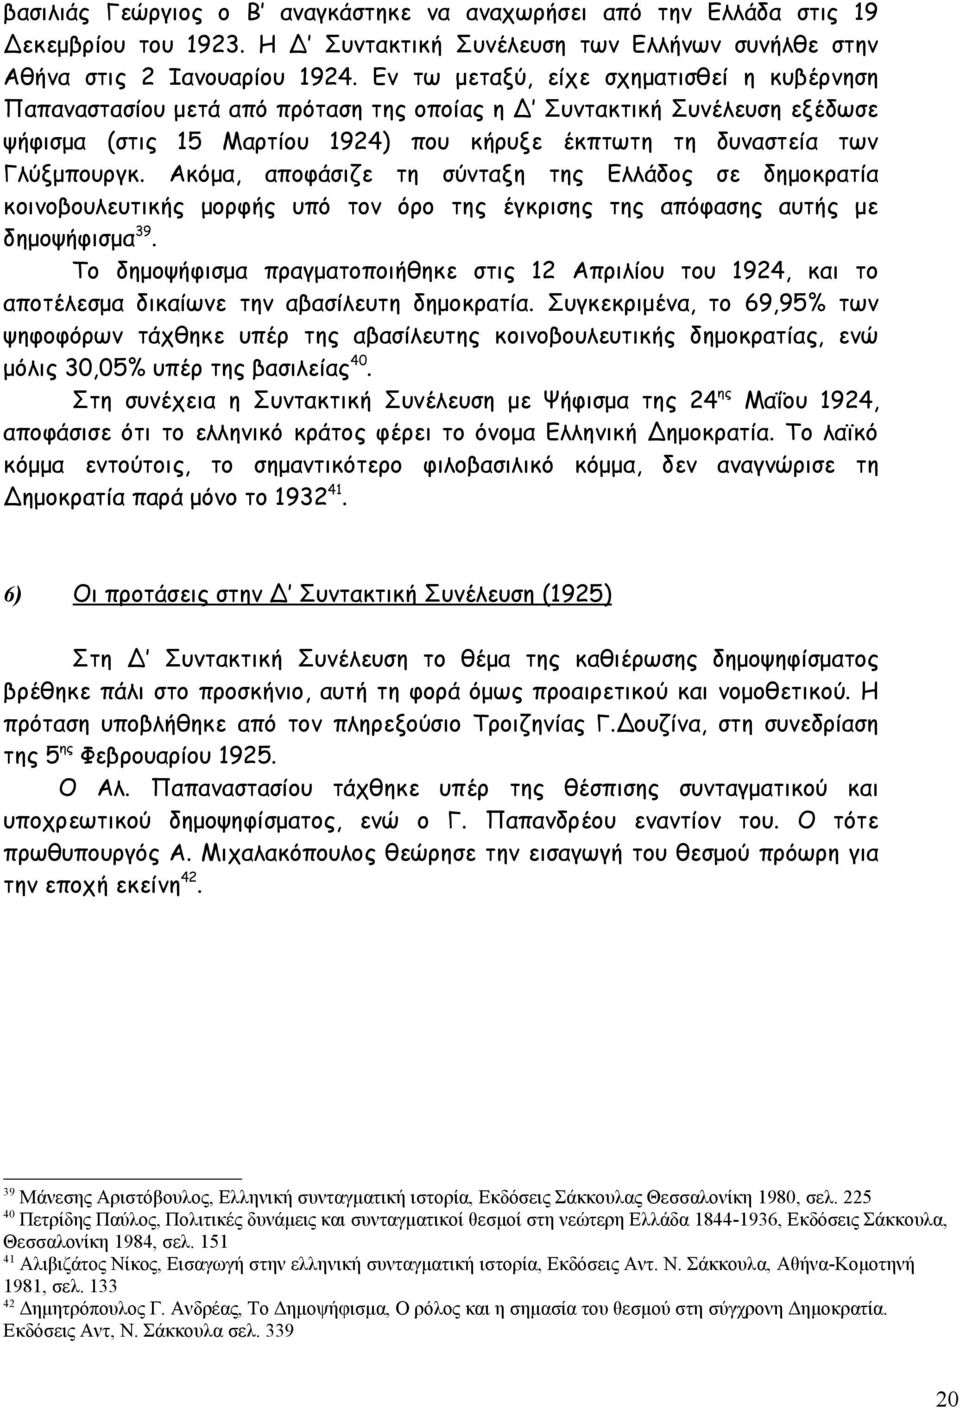 Ακόμα, αποφάσιζε τη σύνταξη της Ελλάδος σε δημοκρατία κοινοβουλευτικής μορφής υπό τον όρο της έγκρισης της απόφασης αυτής με δημοψήφισμα 39.